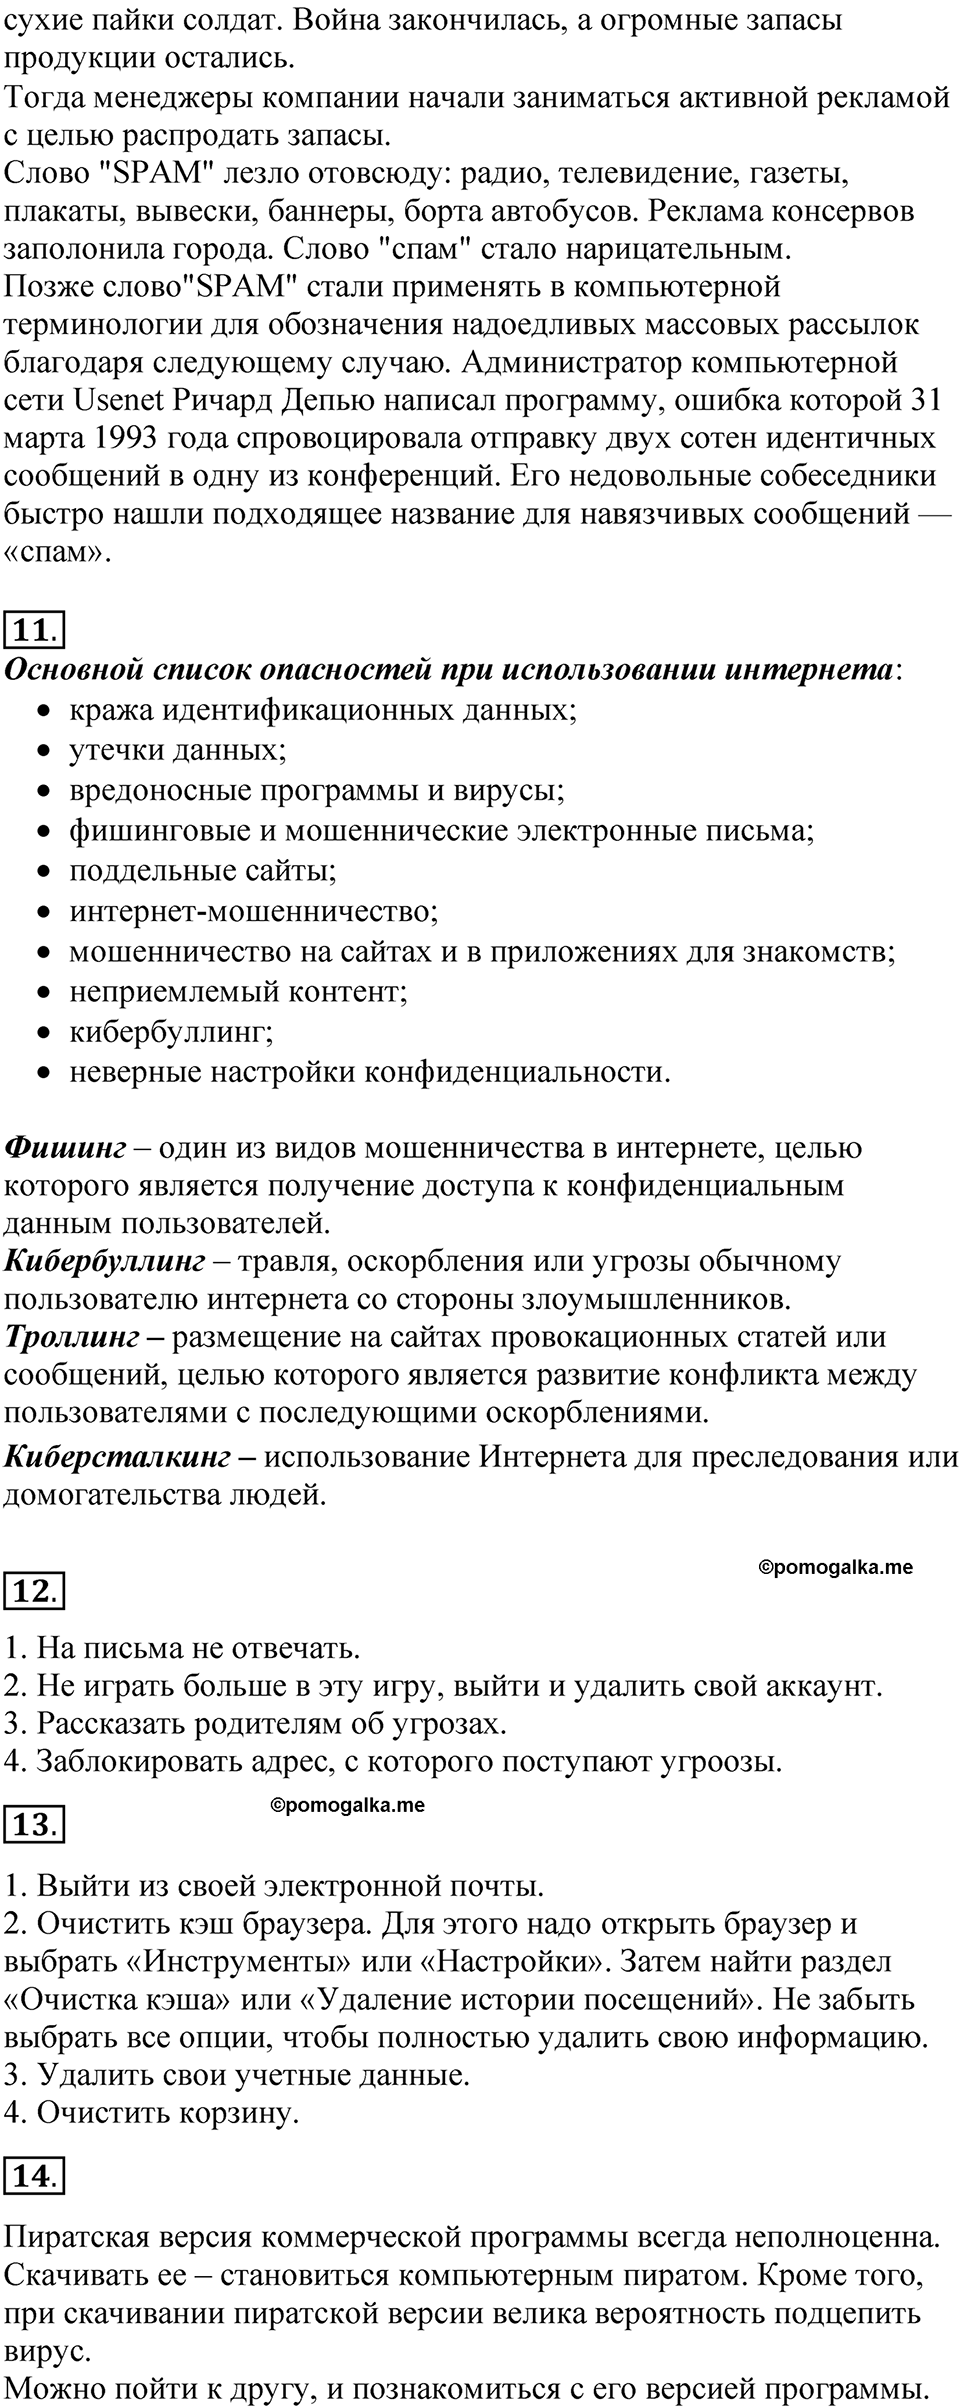 страницы 120-121 параграф 2.6 Вопросы и задания учебнику по информатике 7 класс Босова 2023 просвещение